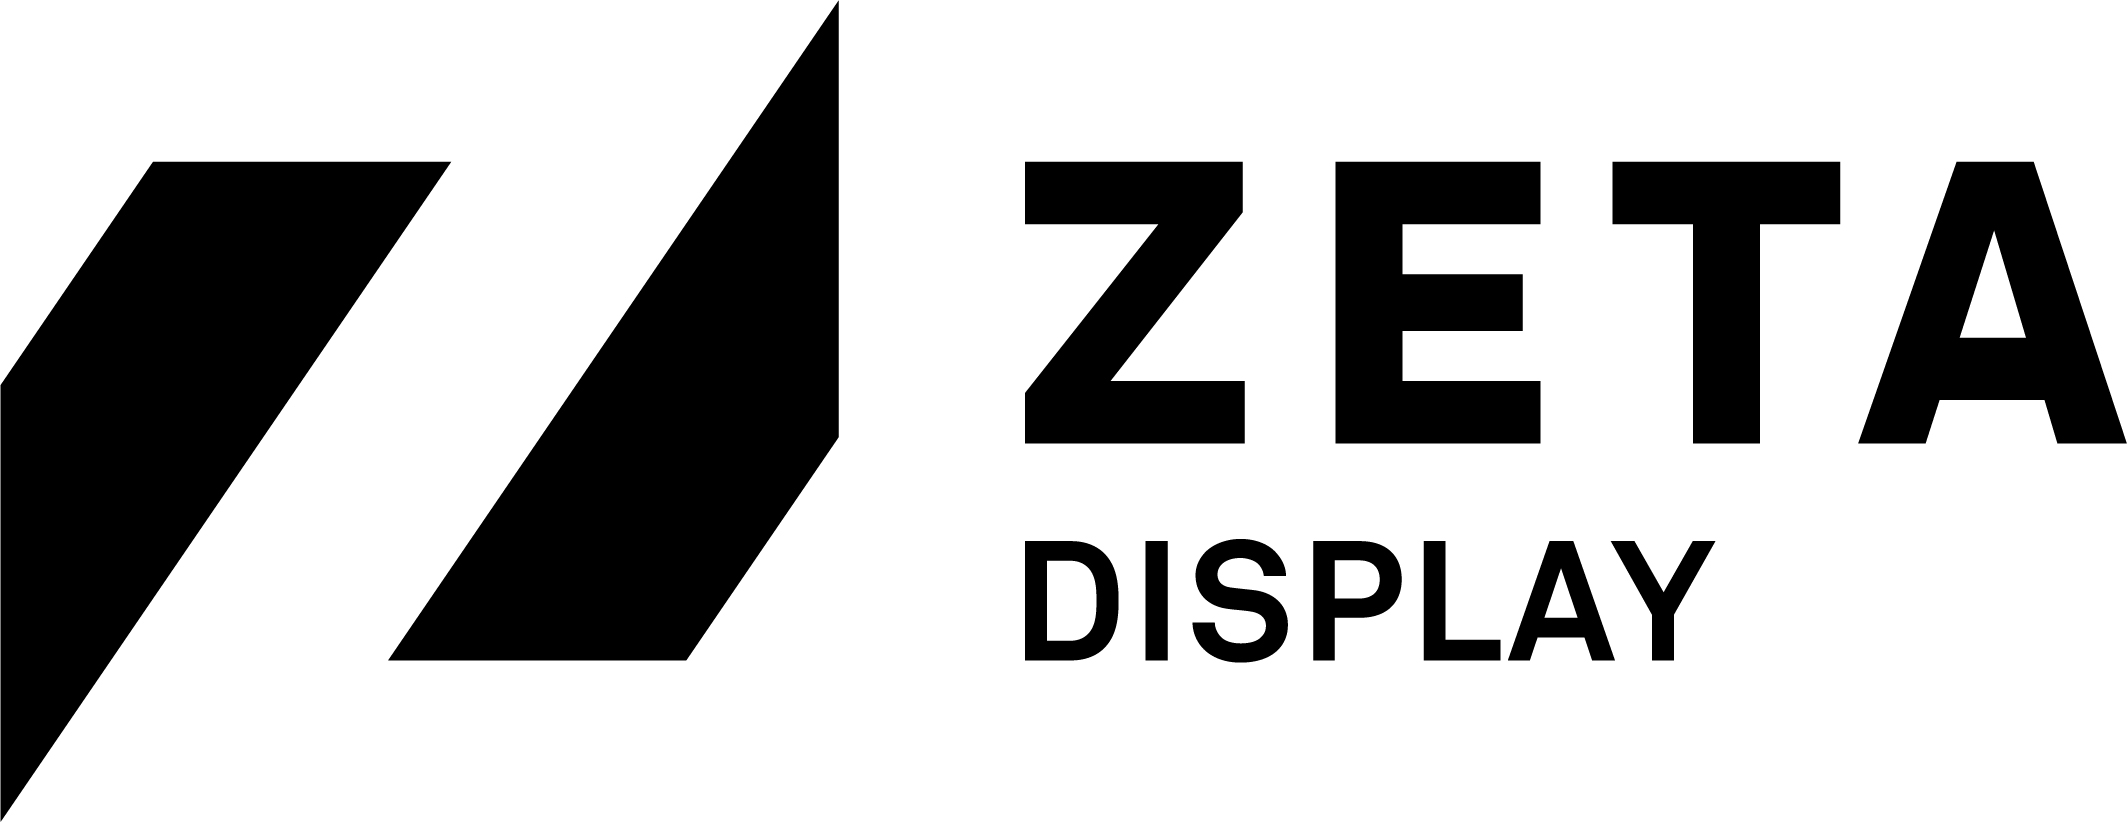 ZetadDisplay Deutschland logo.